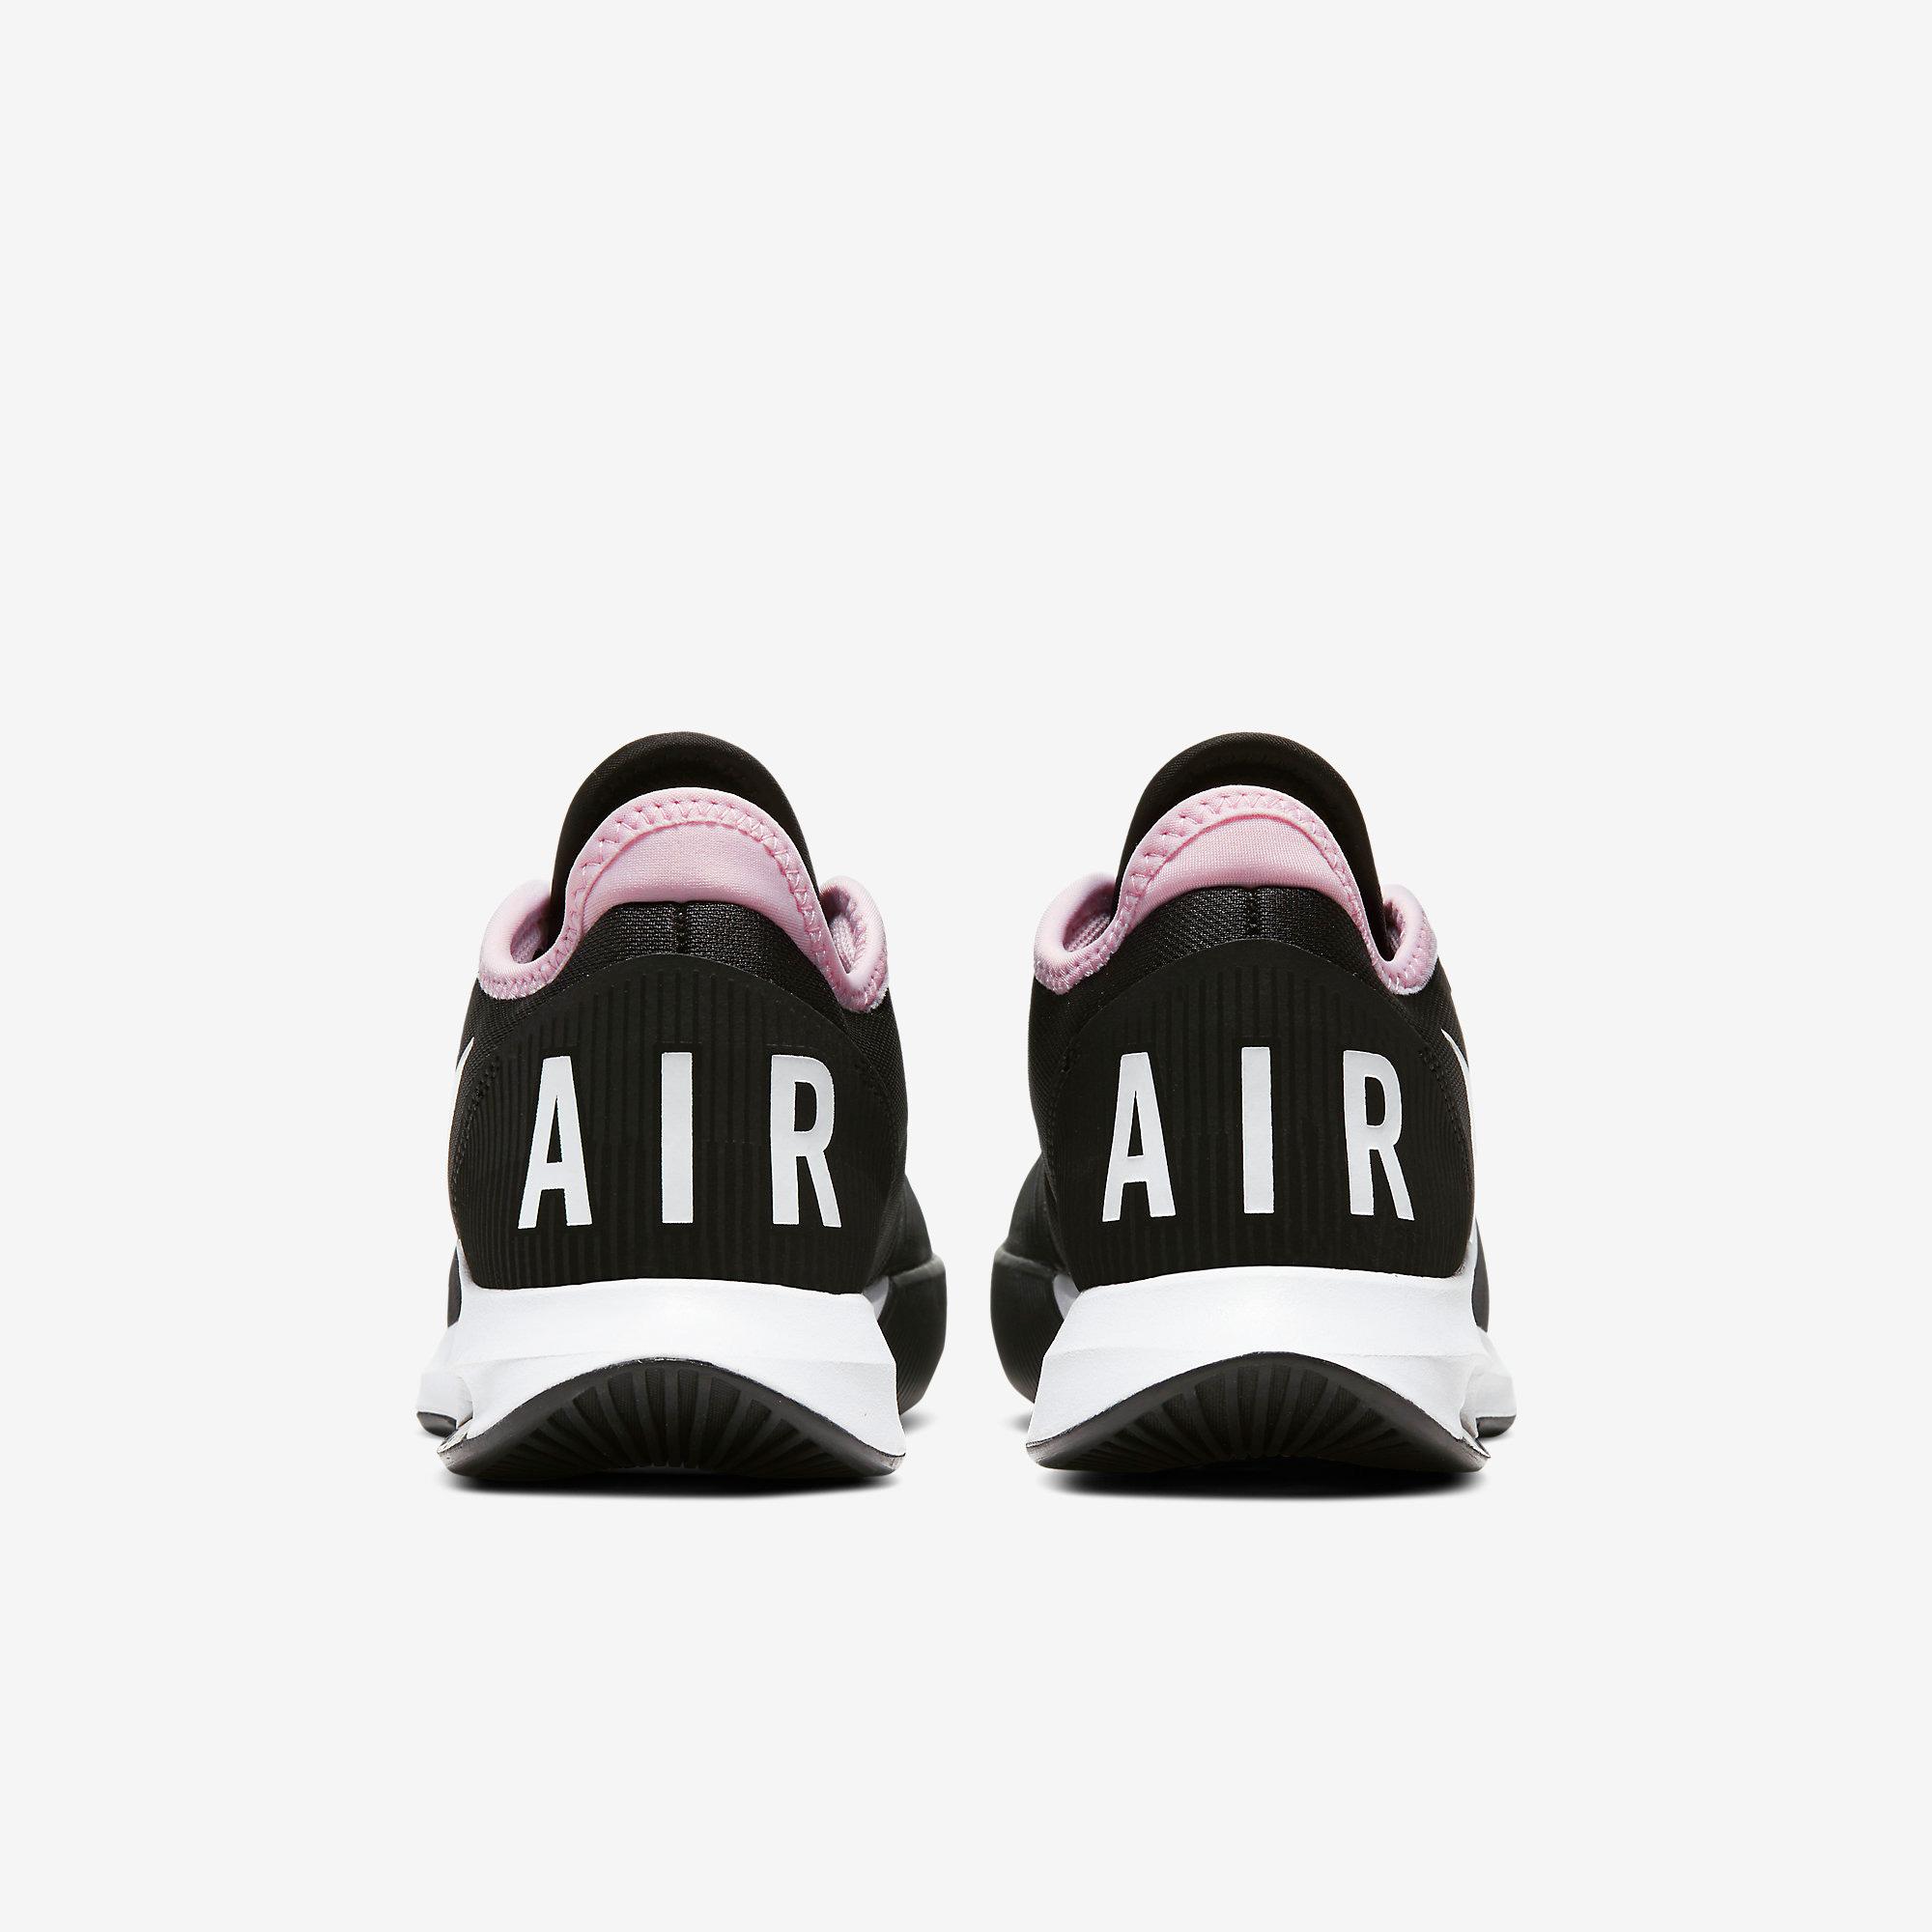 Nike Womens Air Max Wildcard Tennis Shoes - Black/White/Pink Foam ...